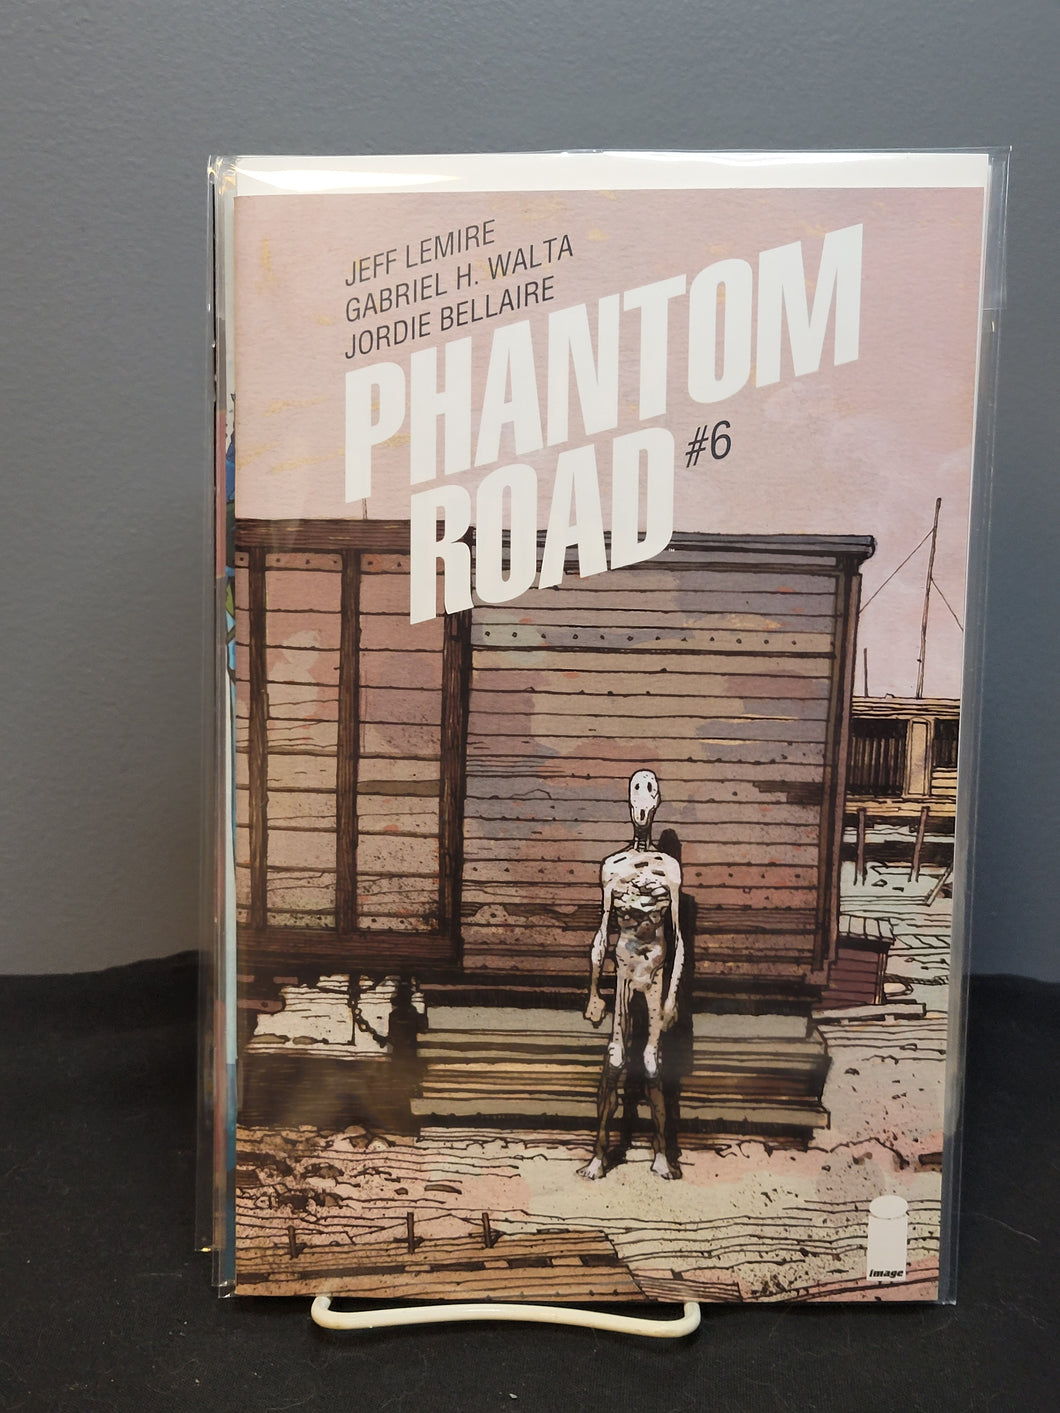 Phantom Road #6